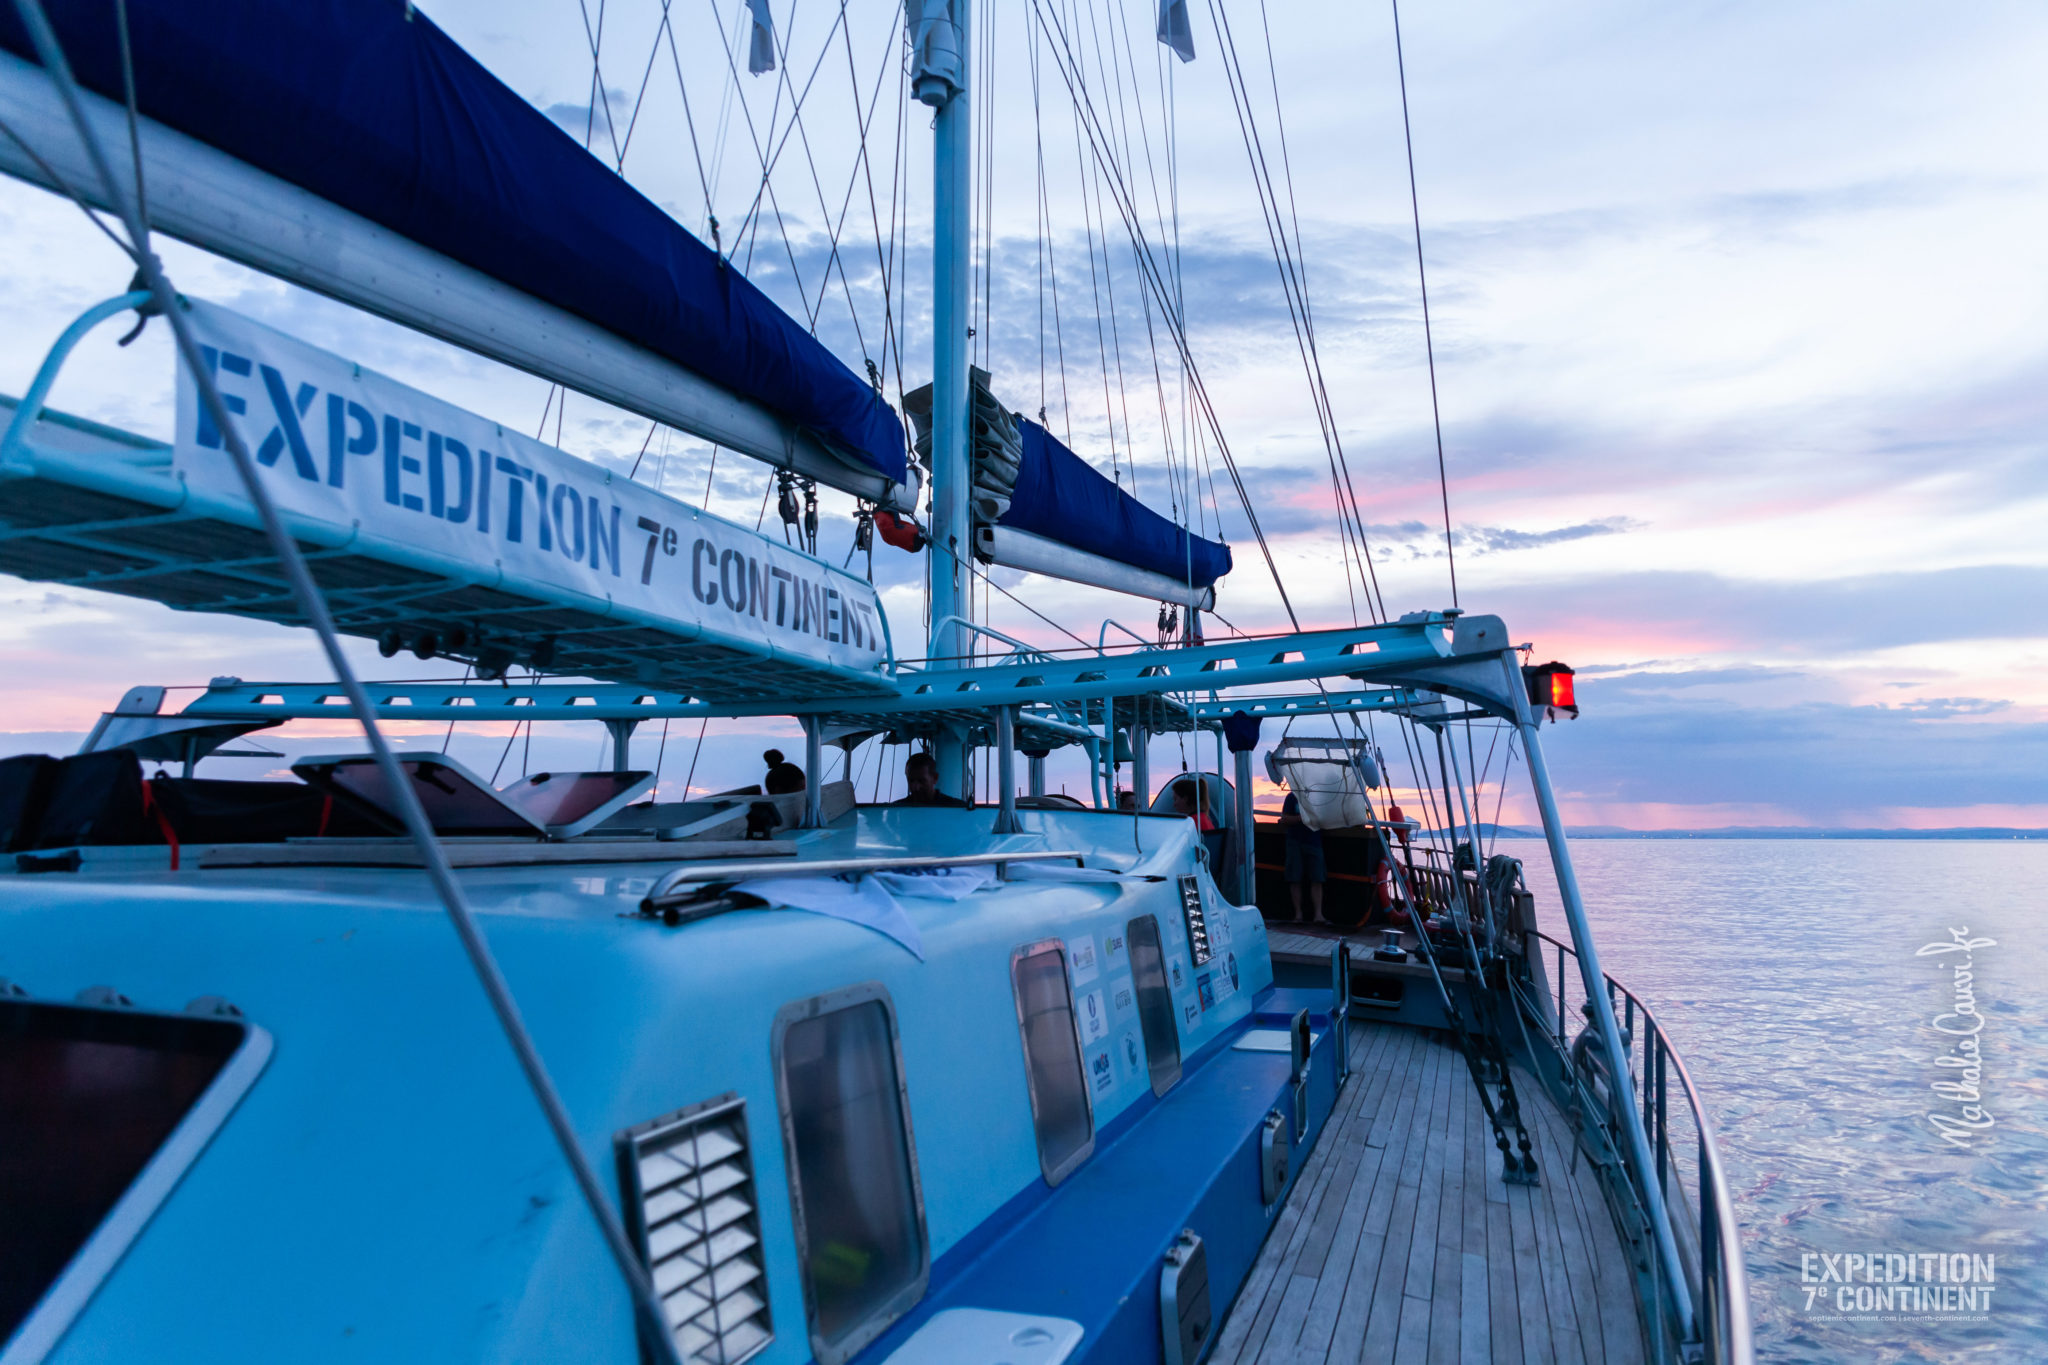     Le bateau de l’association « Expédition 7ème continent » dans la rade de Saint-Pierre

